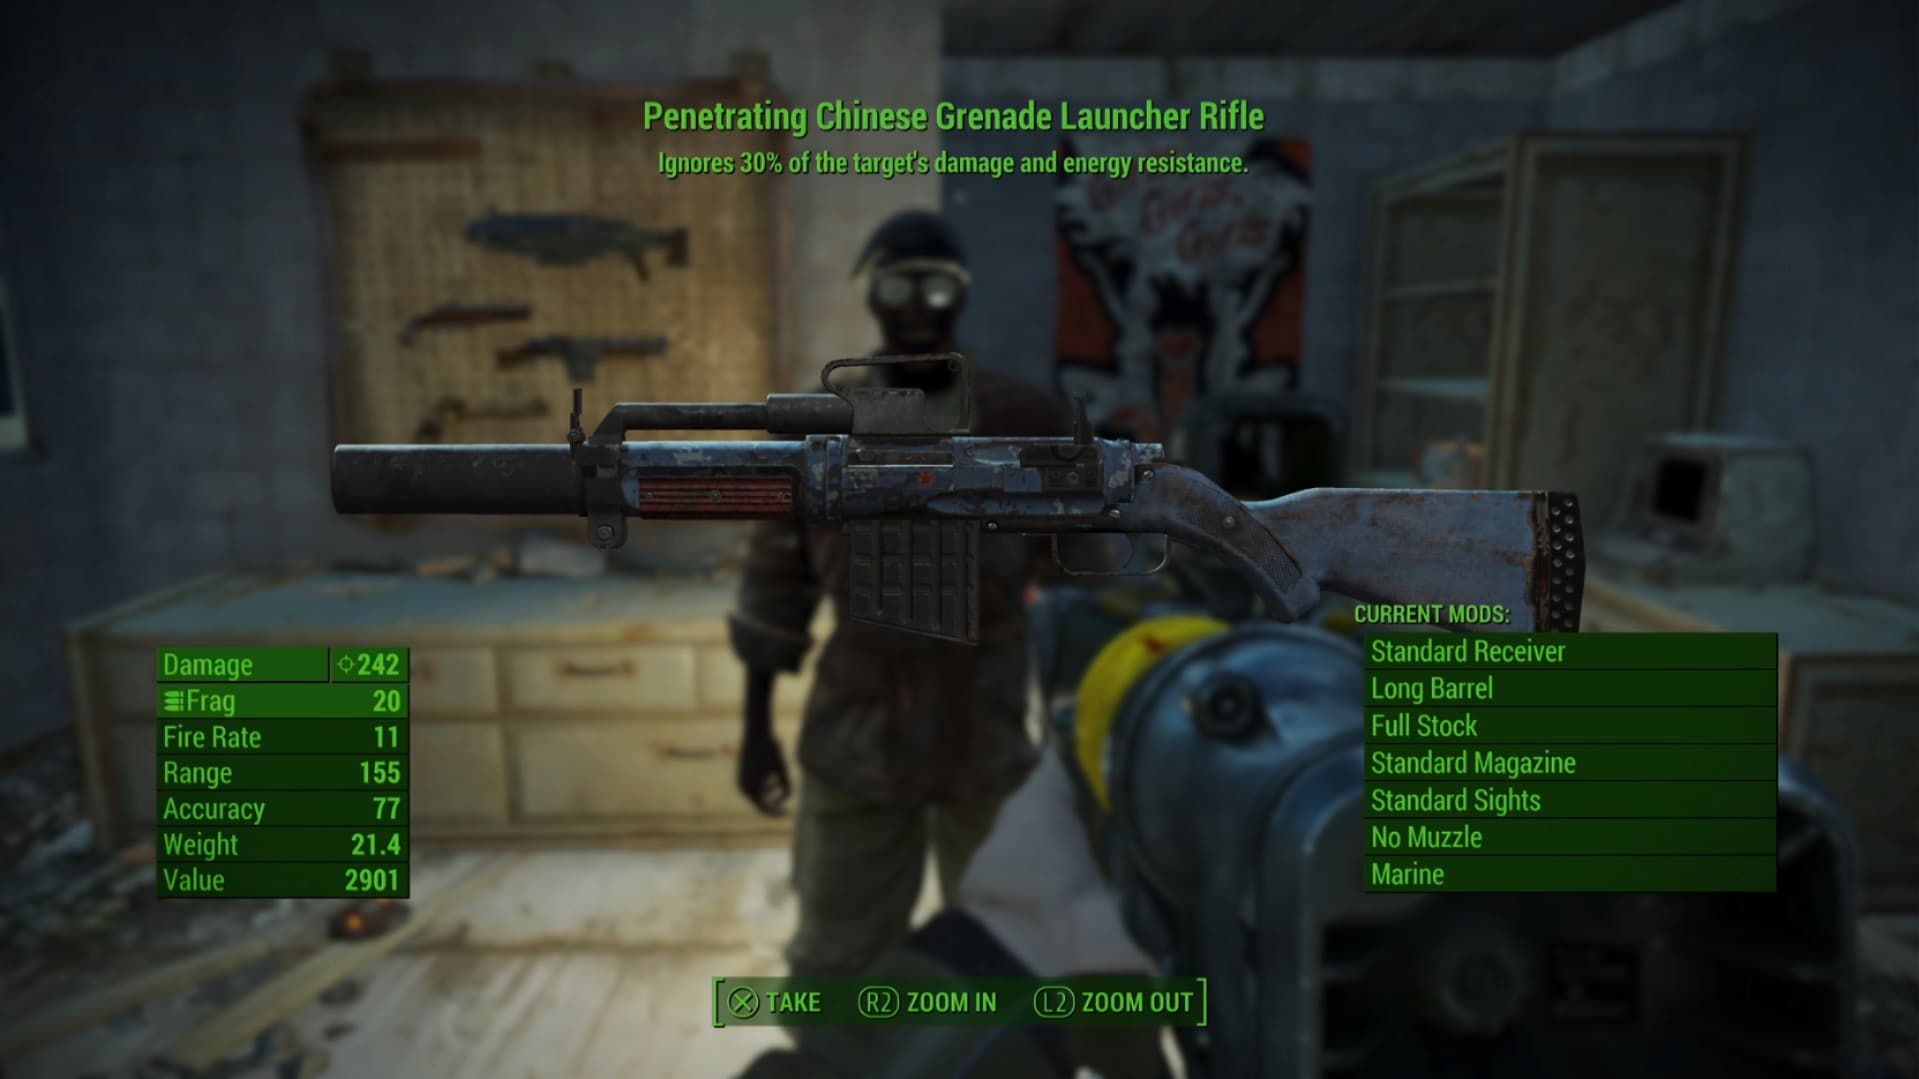 A arma Penetrating Chinese Grenade Launcher Rifle que você recebe como recompensa na missão When Pigs Fly do Fallout 4